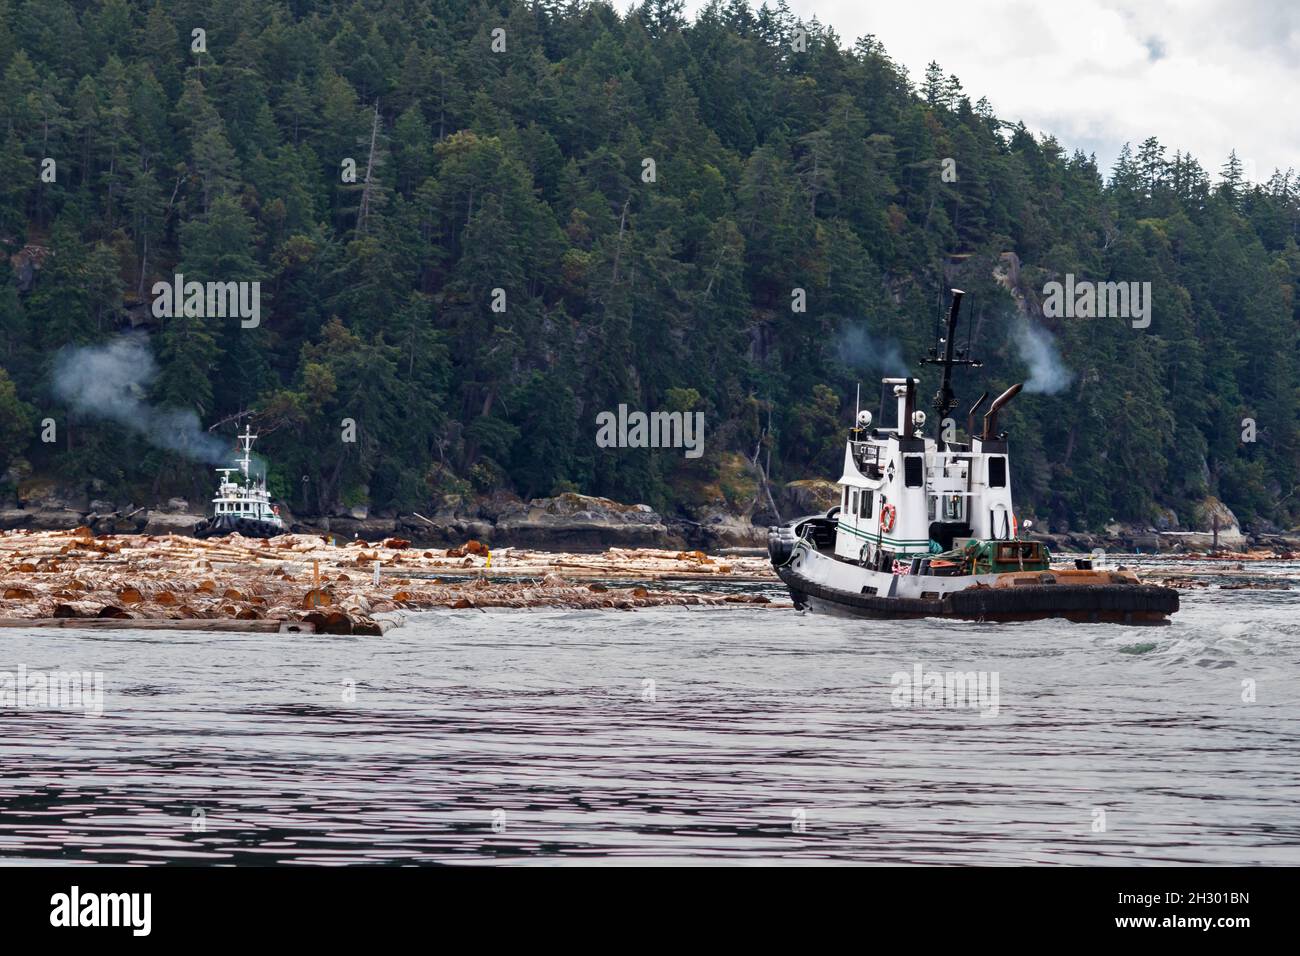 Dos remolcadores, CT Titan y Hustler II, trabajan juntos, empujando un auge de troncos para moverlo a lo largo de la orilla de la arbolada Isla Valdes, Columbia Británica. Foto de stock